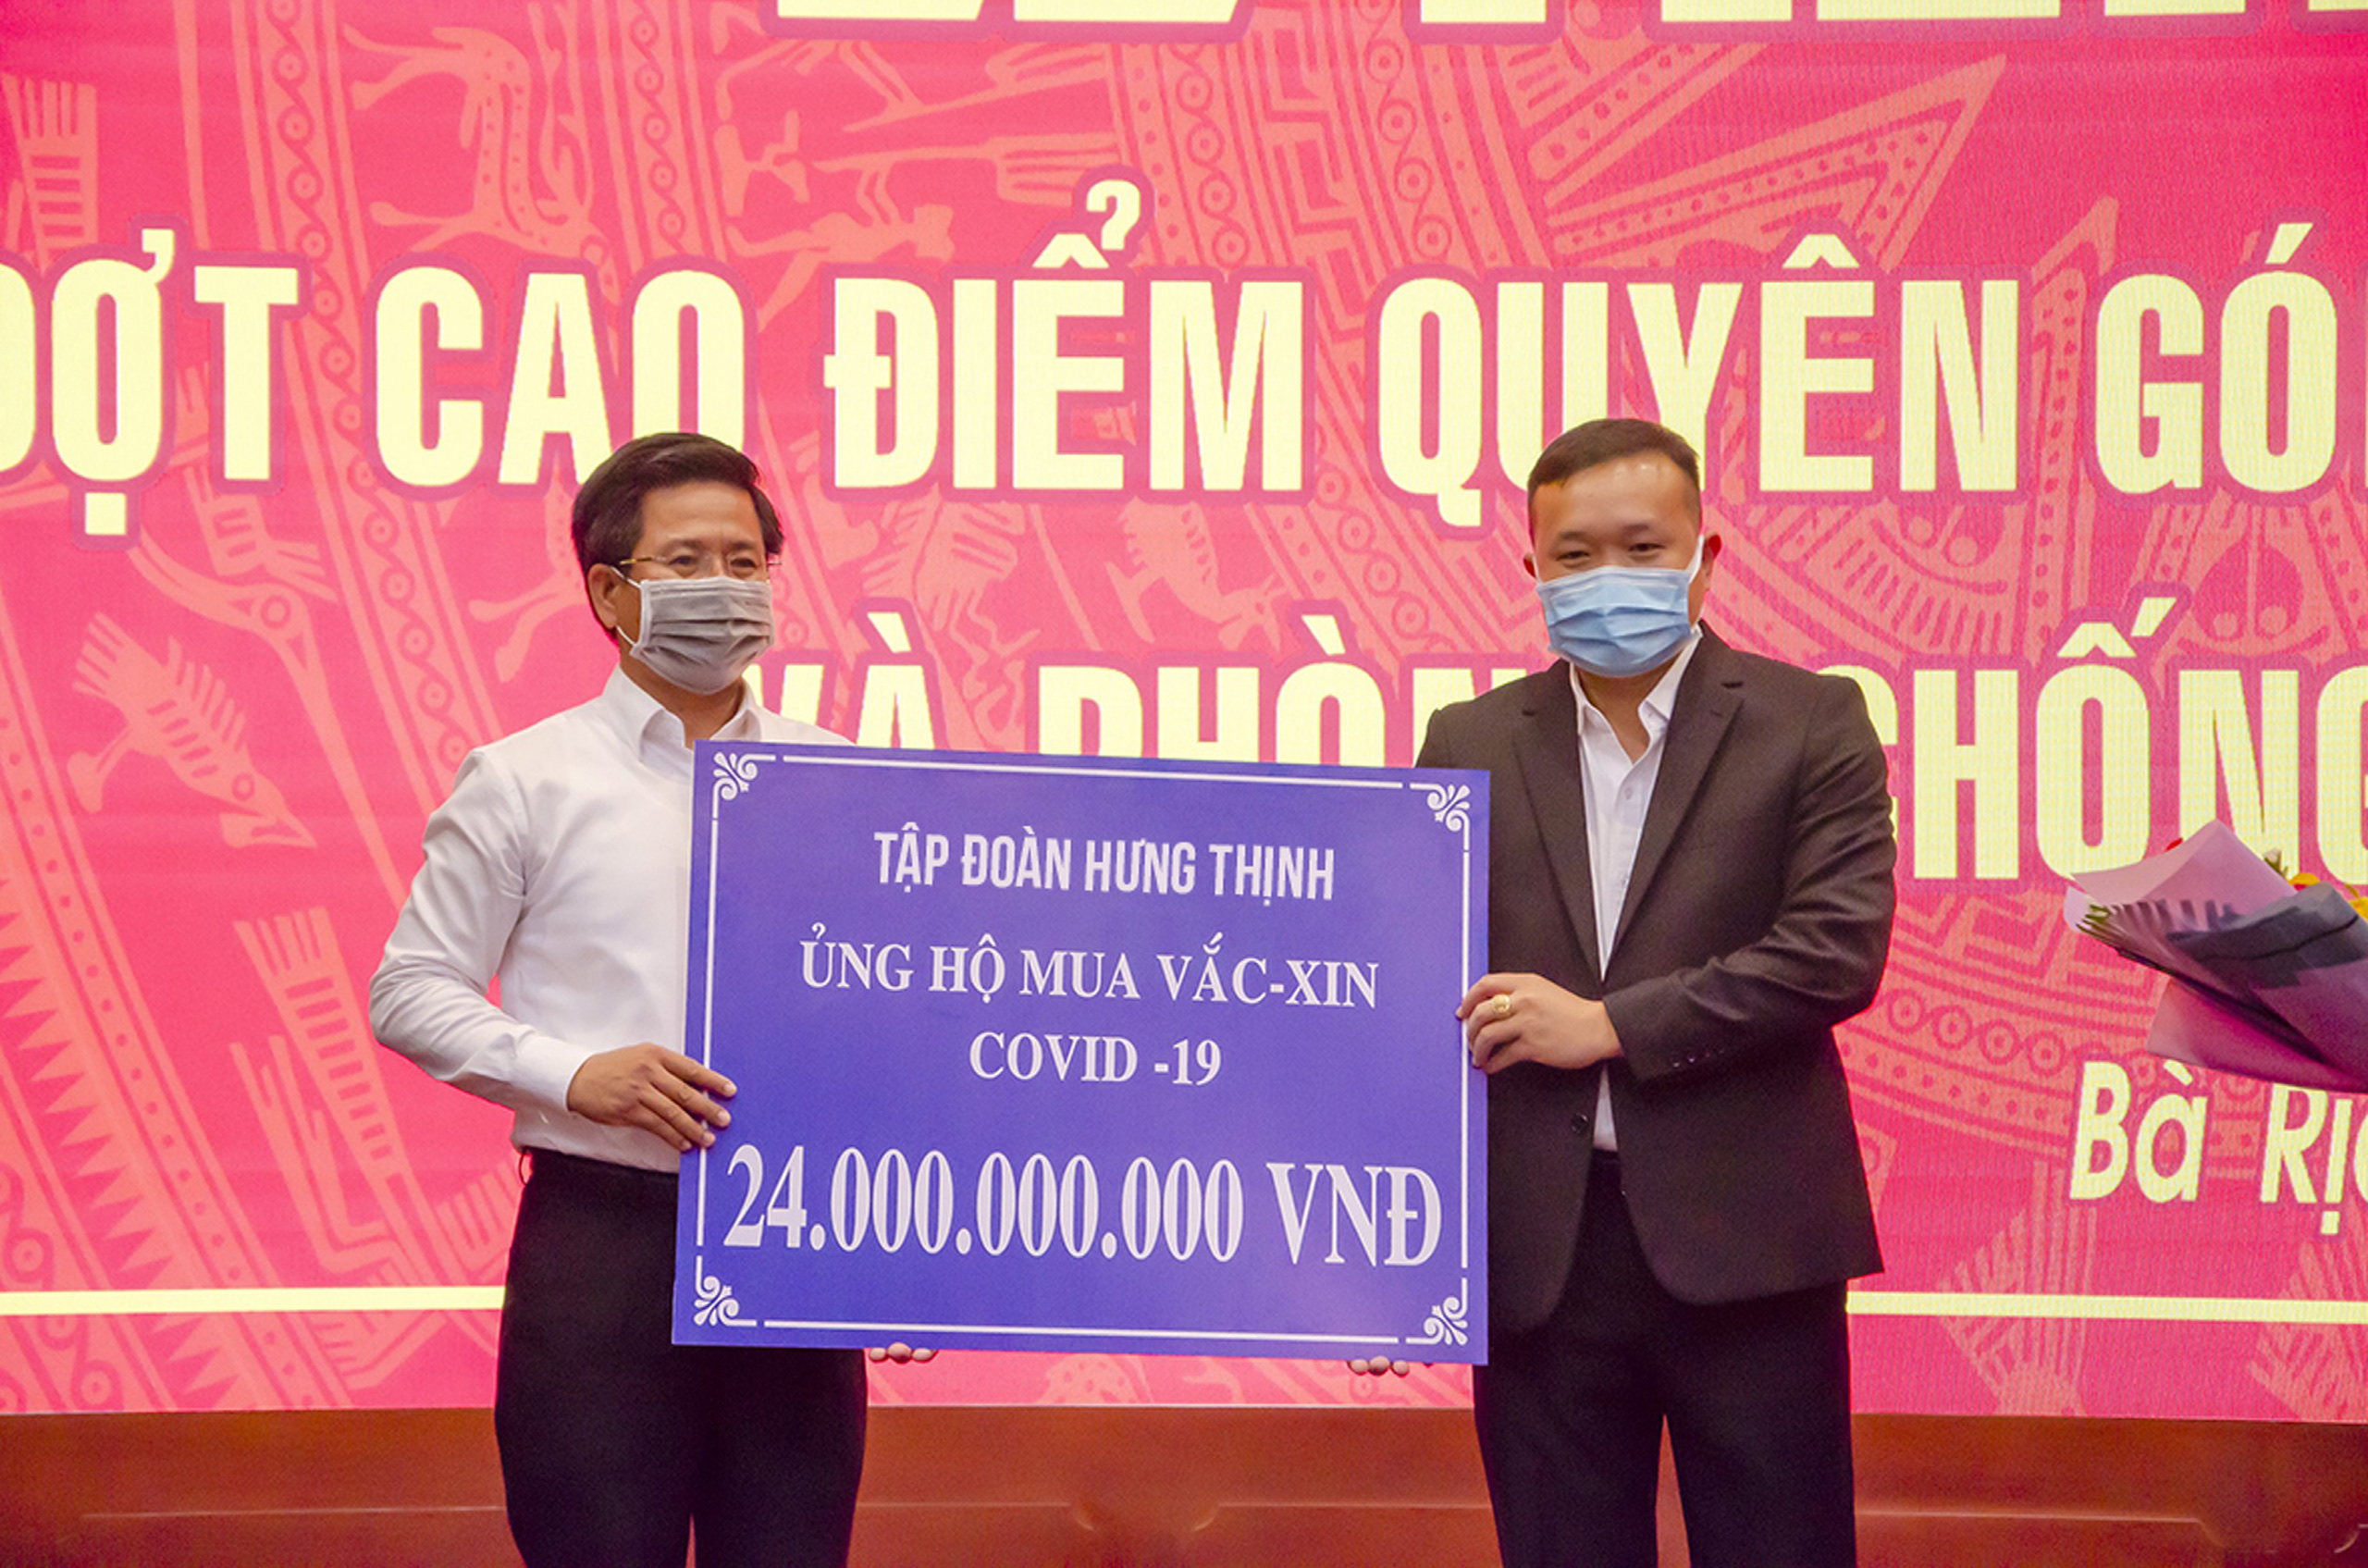 Đại diện Tập đoàn Hưng Thịnh trao bảng tượng trưng ủng hộ 24 tỷ đồng mua vaccine cho UBMTTQ Việt Nam tỉnh.